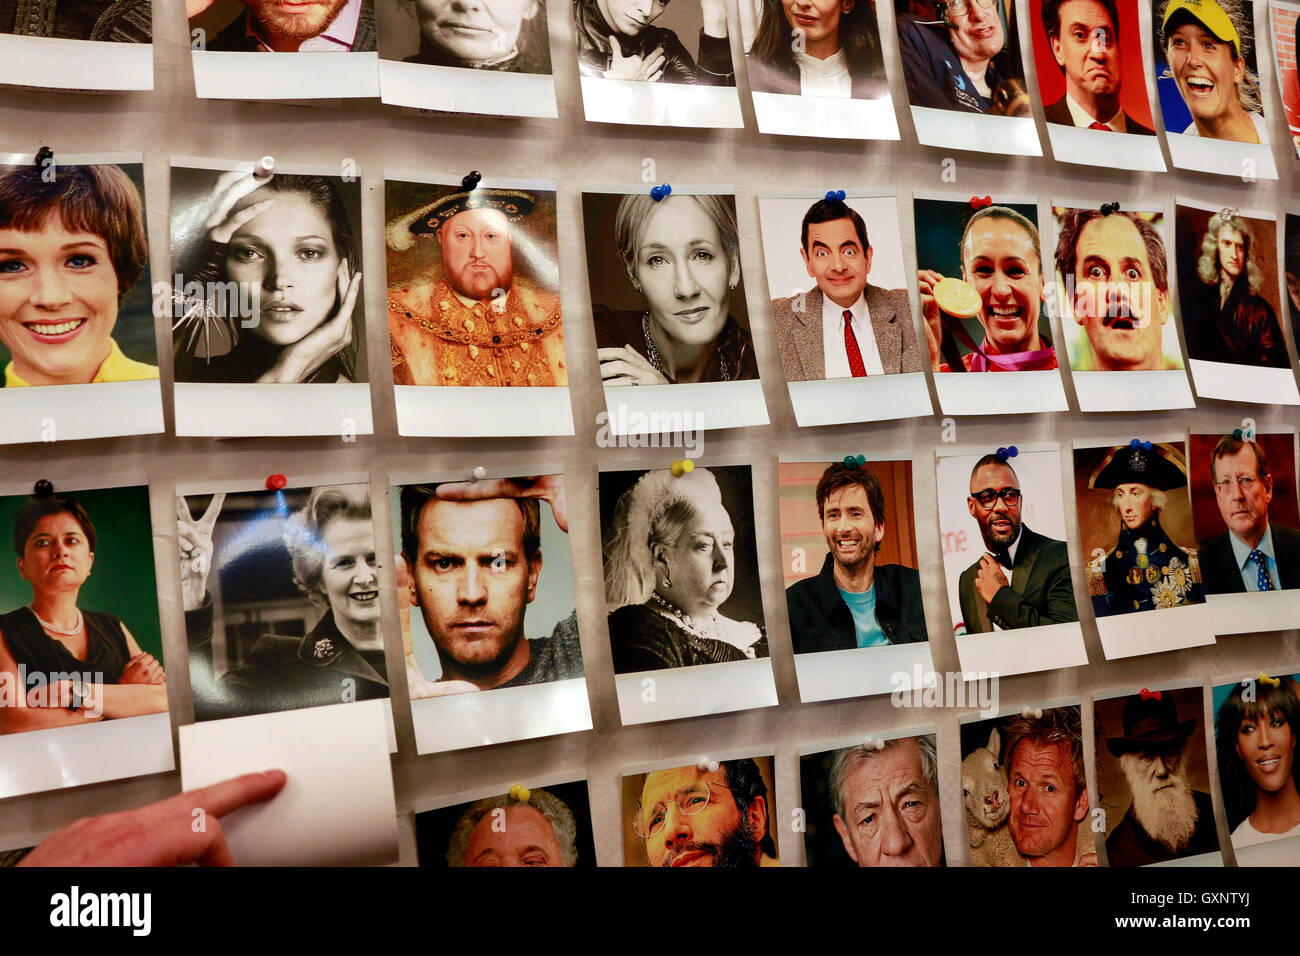 Werbung gegen den Brexit: Bilder britischer Prominenter wie Mr Bean, Henry 8, Joanne K. Rowling, Kate Moss, William Shakespeare, Stock Photo